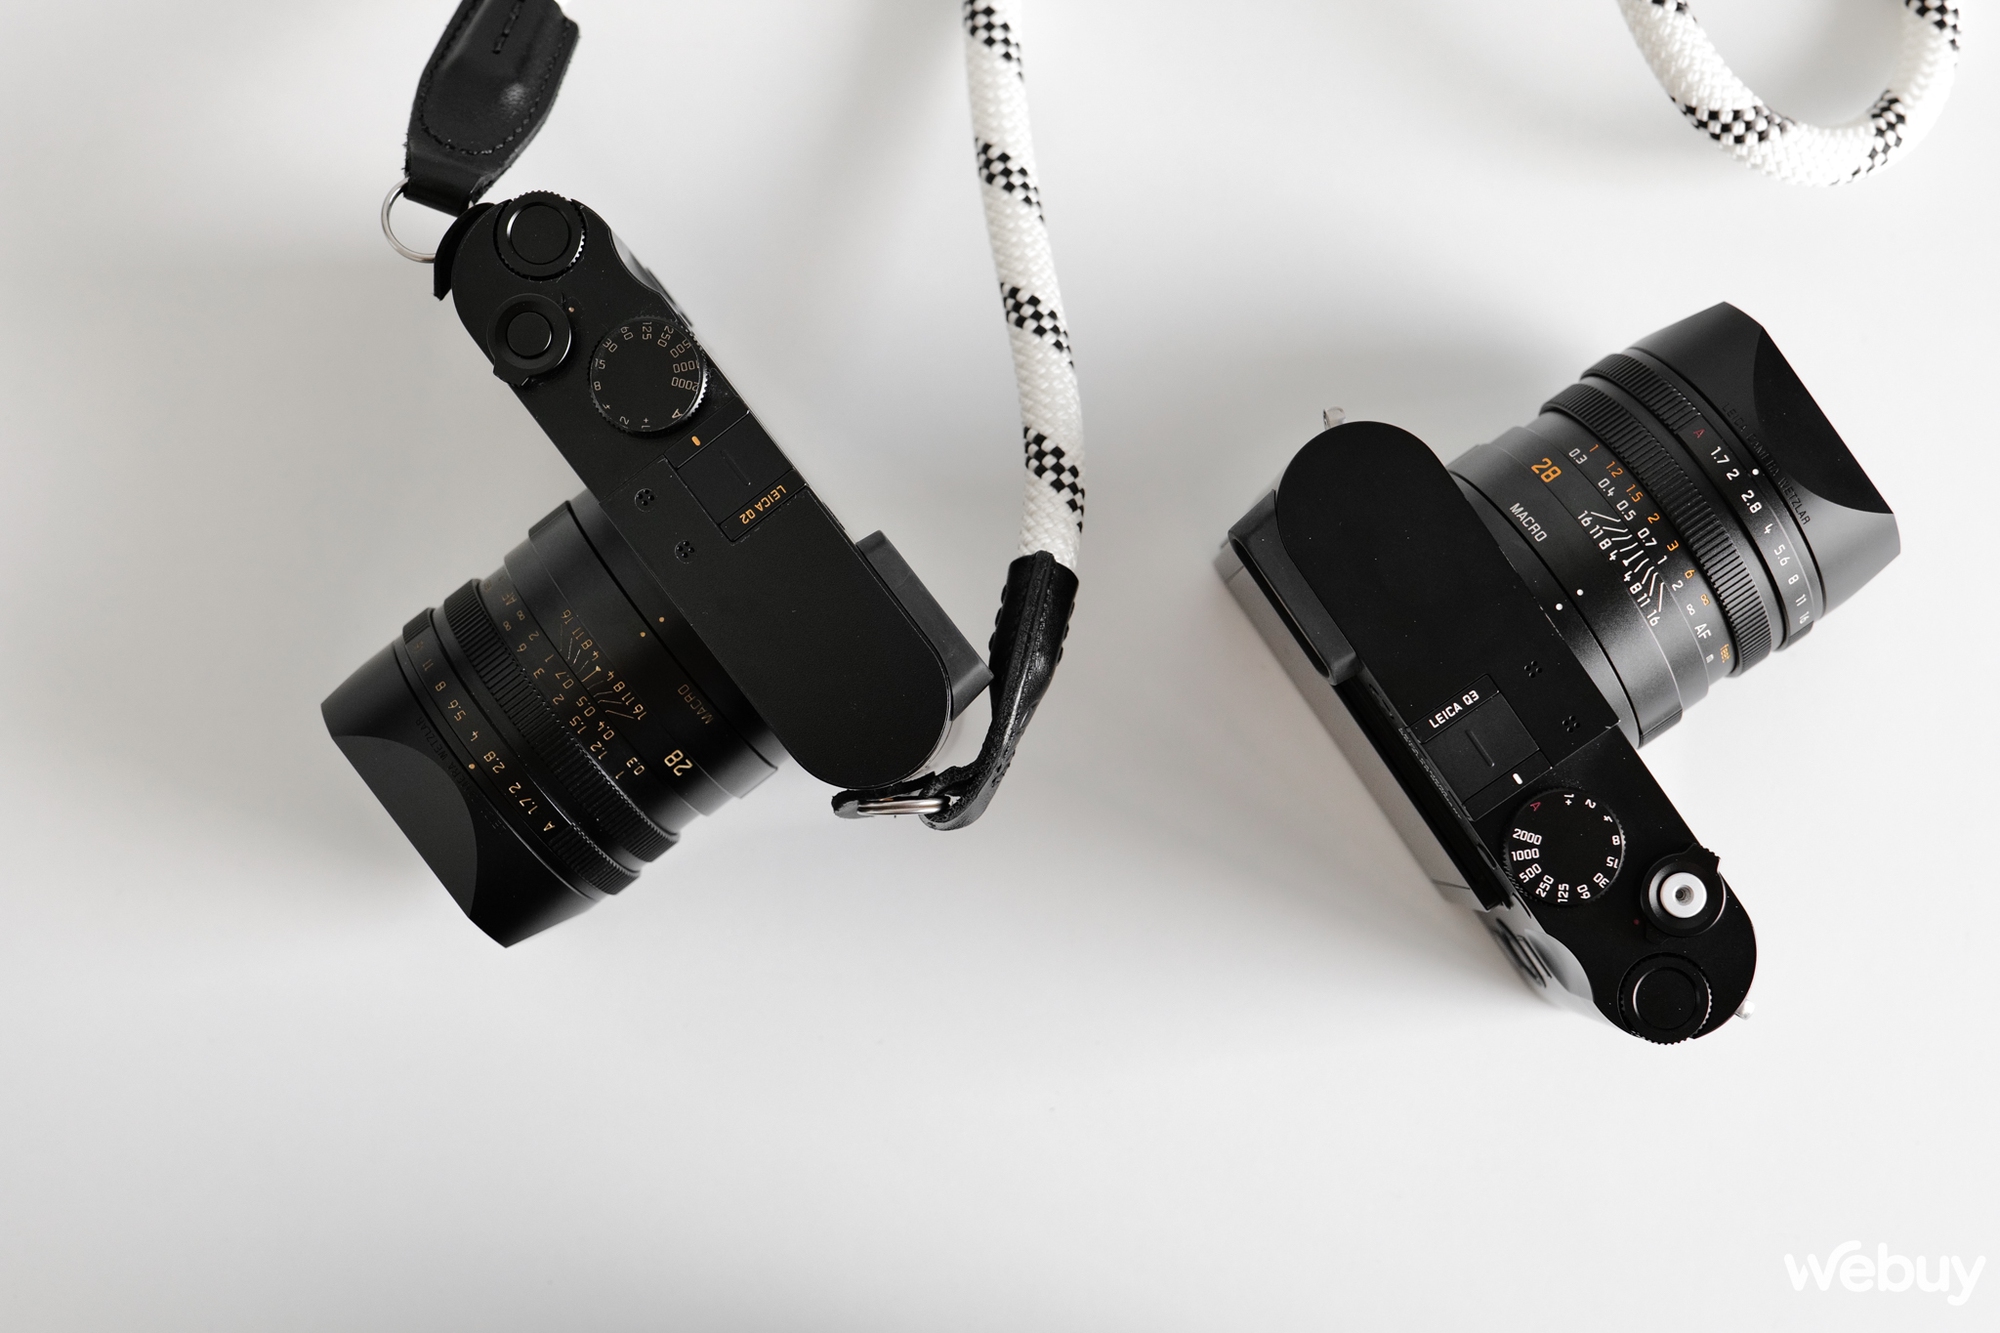 Trải nghiệm máy ảnh Leica Q3: Bước ra khỏi vùng an toàn - Ảnh 5.